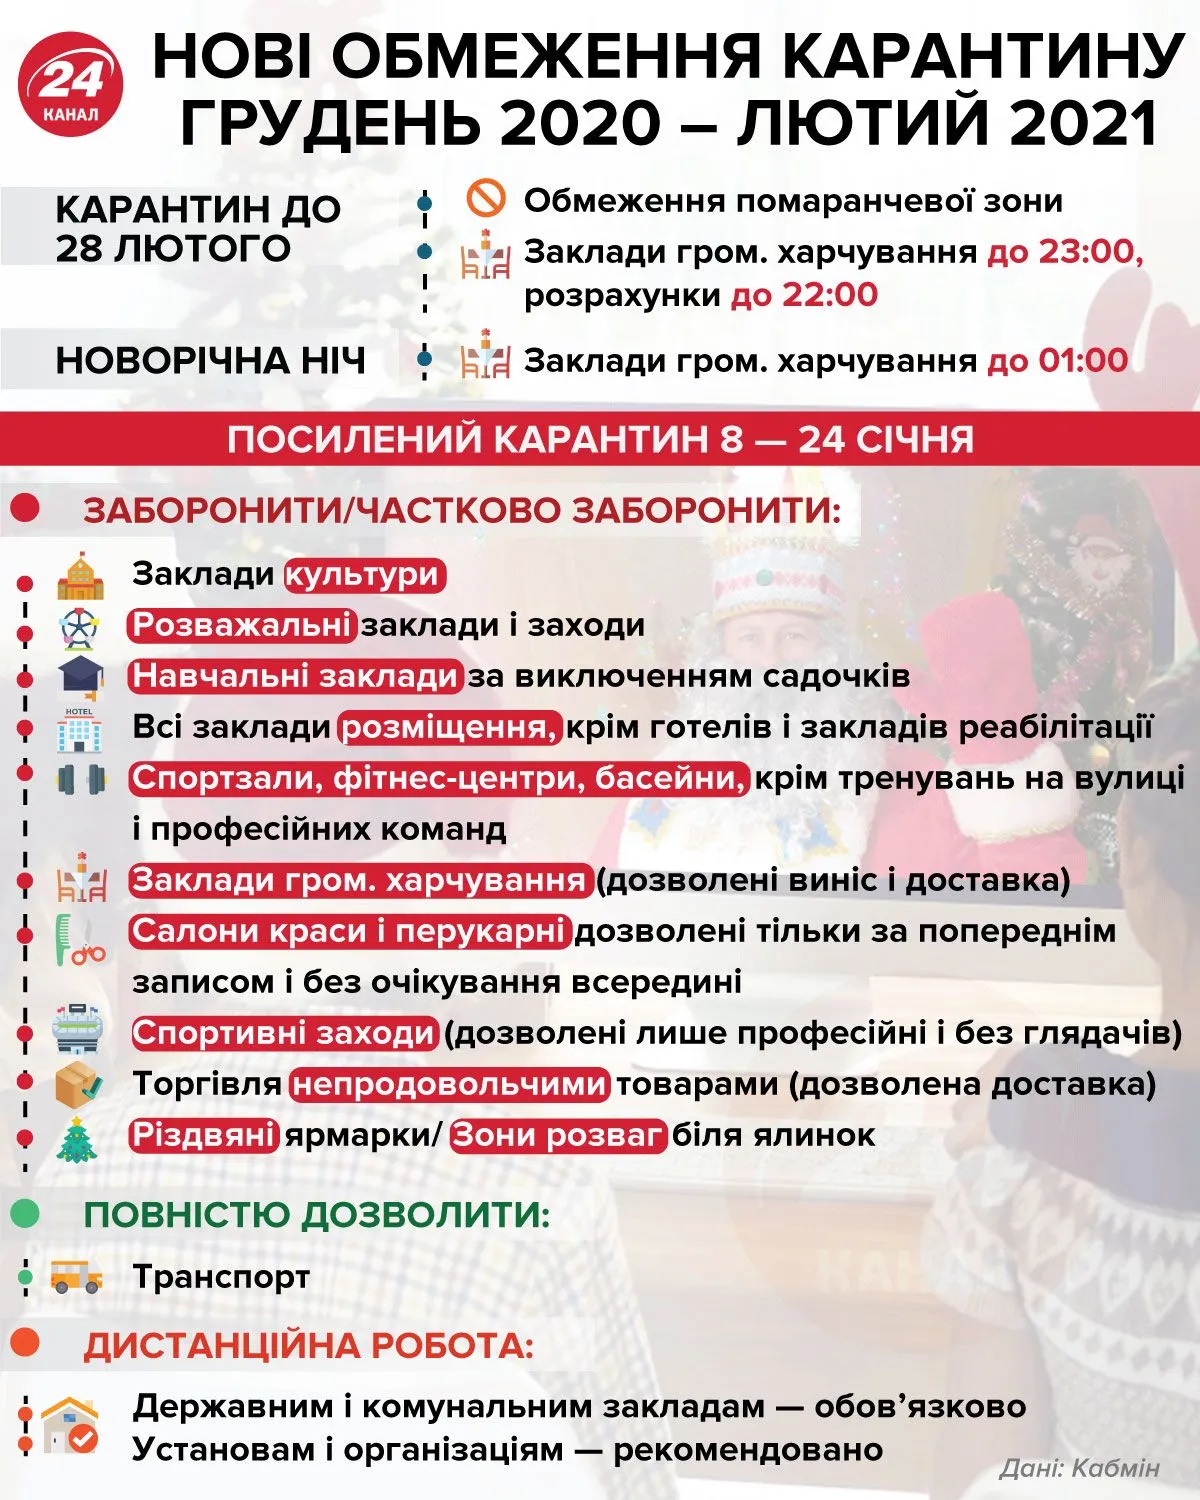 Нові обмеження карантину в Україні інфографіка 24 канал 